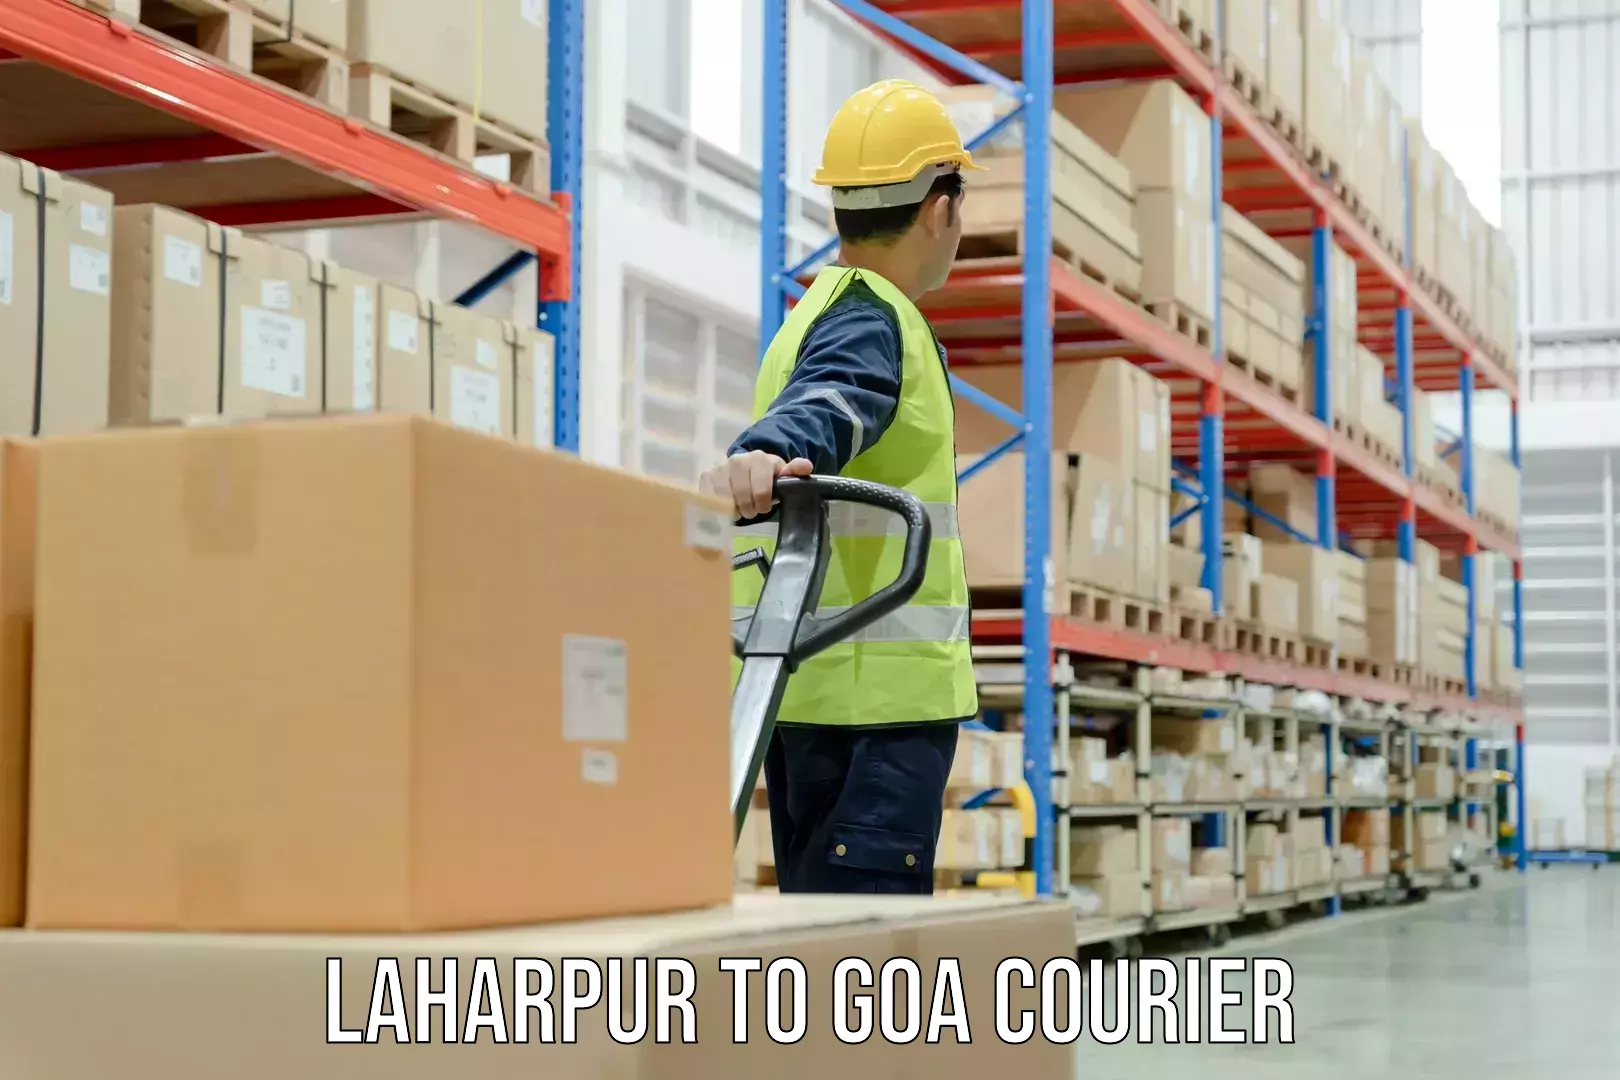 Express courier capabilities Laharpur to Ponda